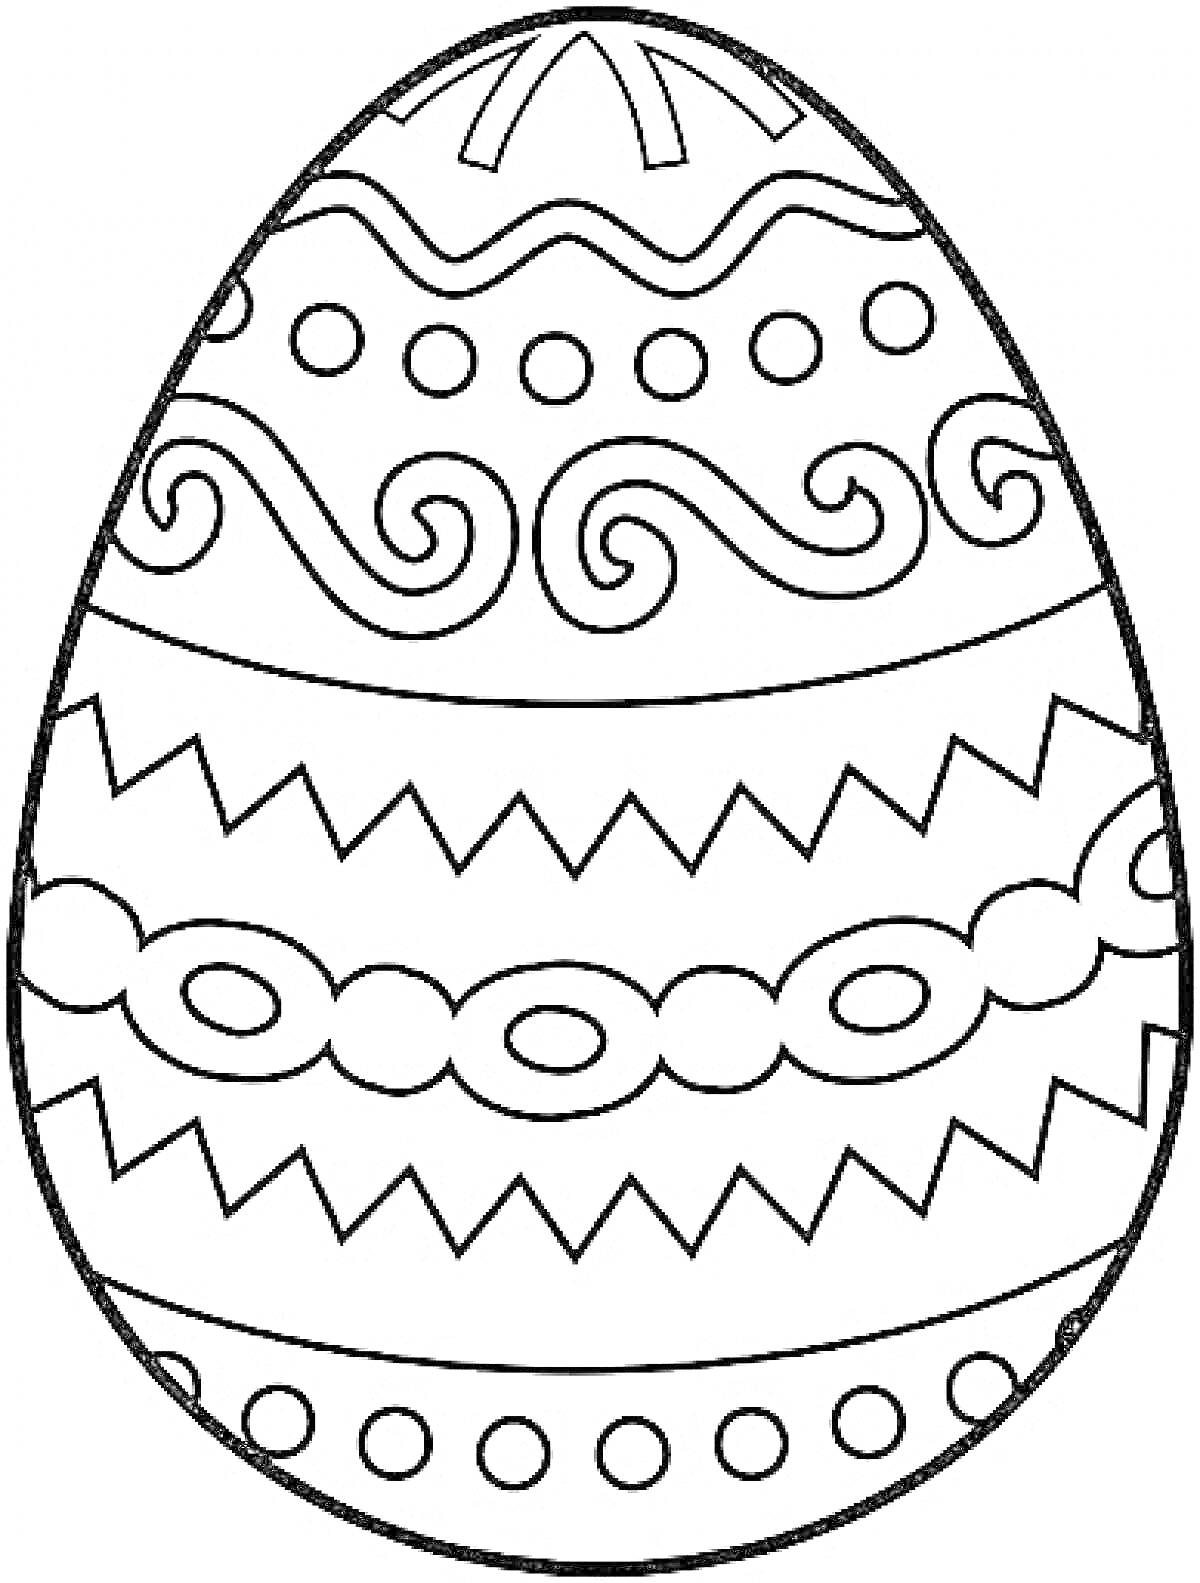 Пасхальное яйцо с волнистыми узорами, зигзагами, кружками и овалами